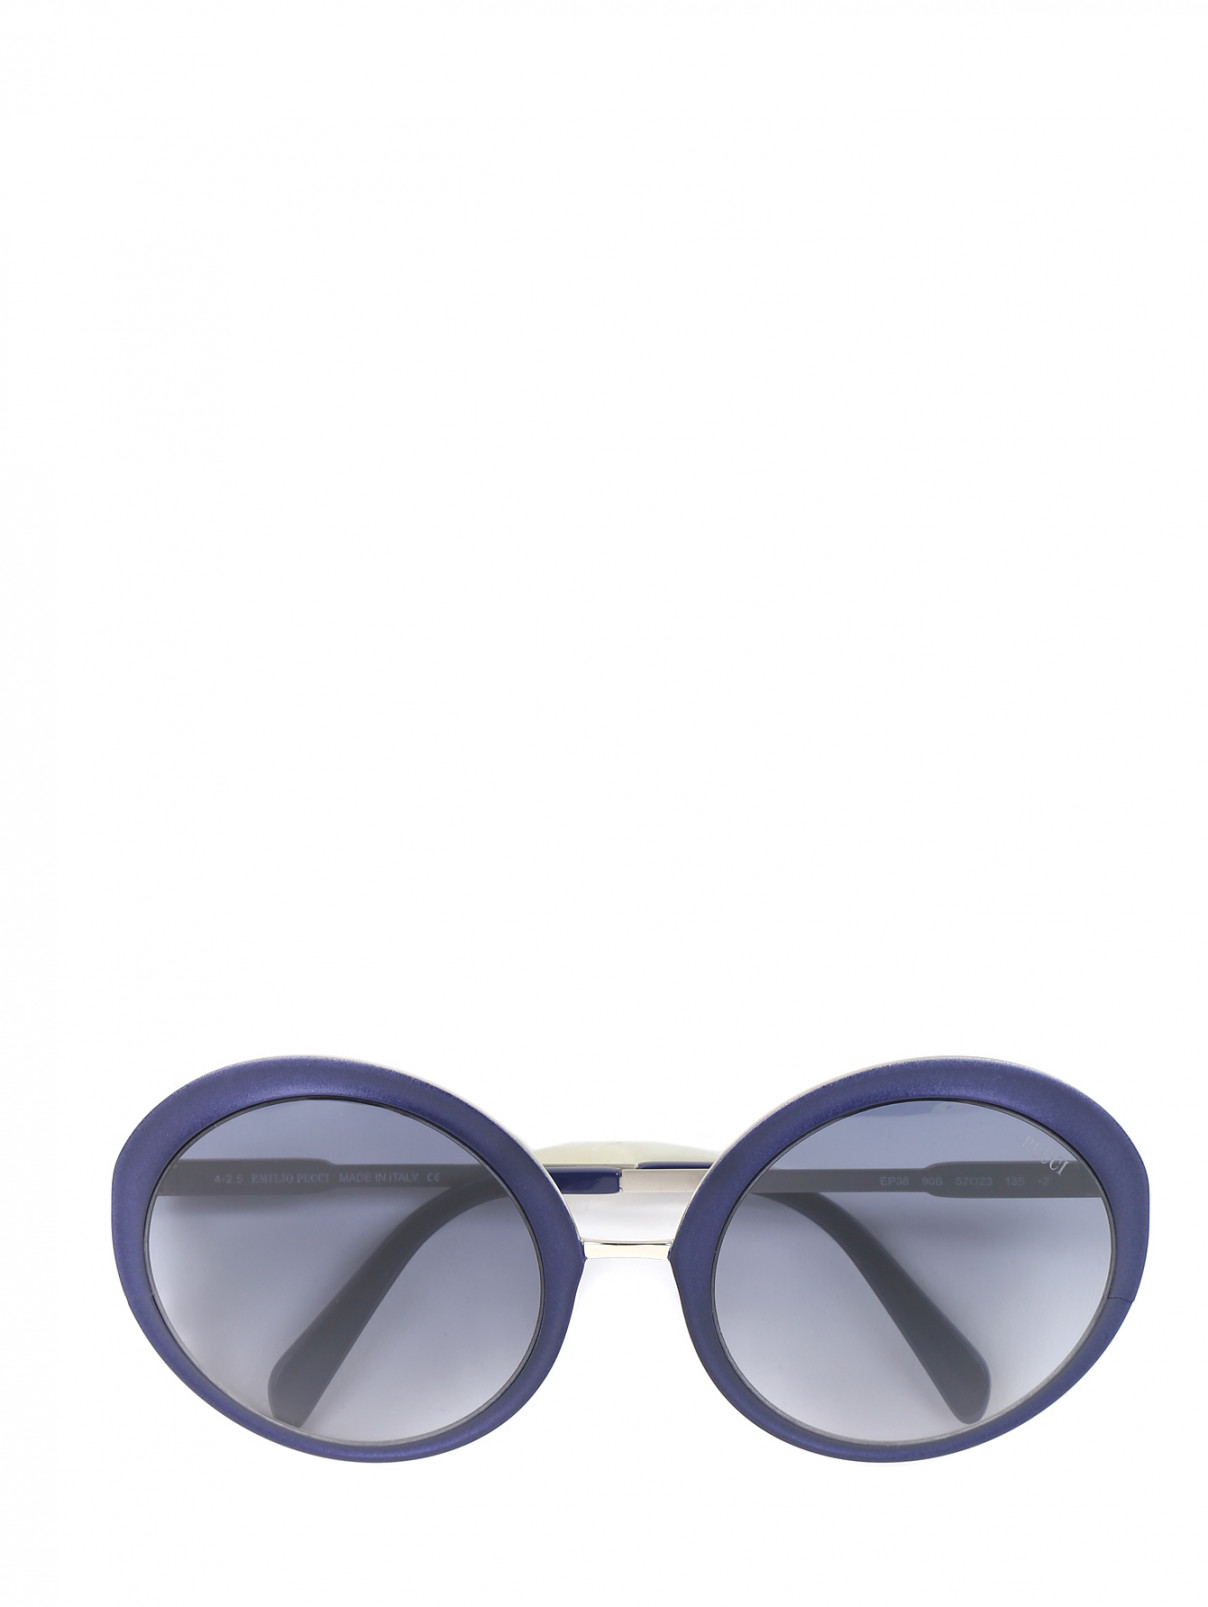 Солнцезащитные очки в оправе из пластика и металла Emilio Pucci  –  Общий вид  – Цвет:  Синий